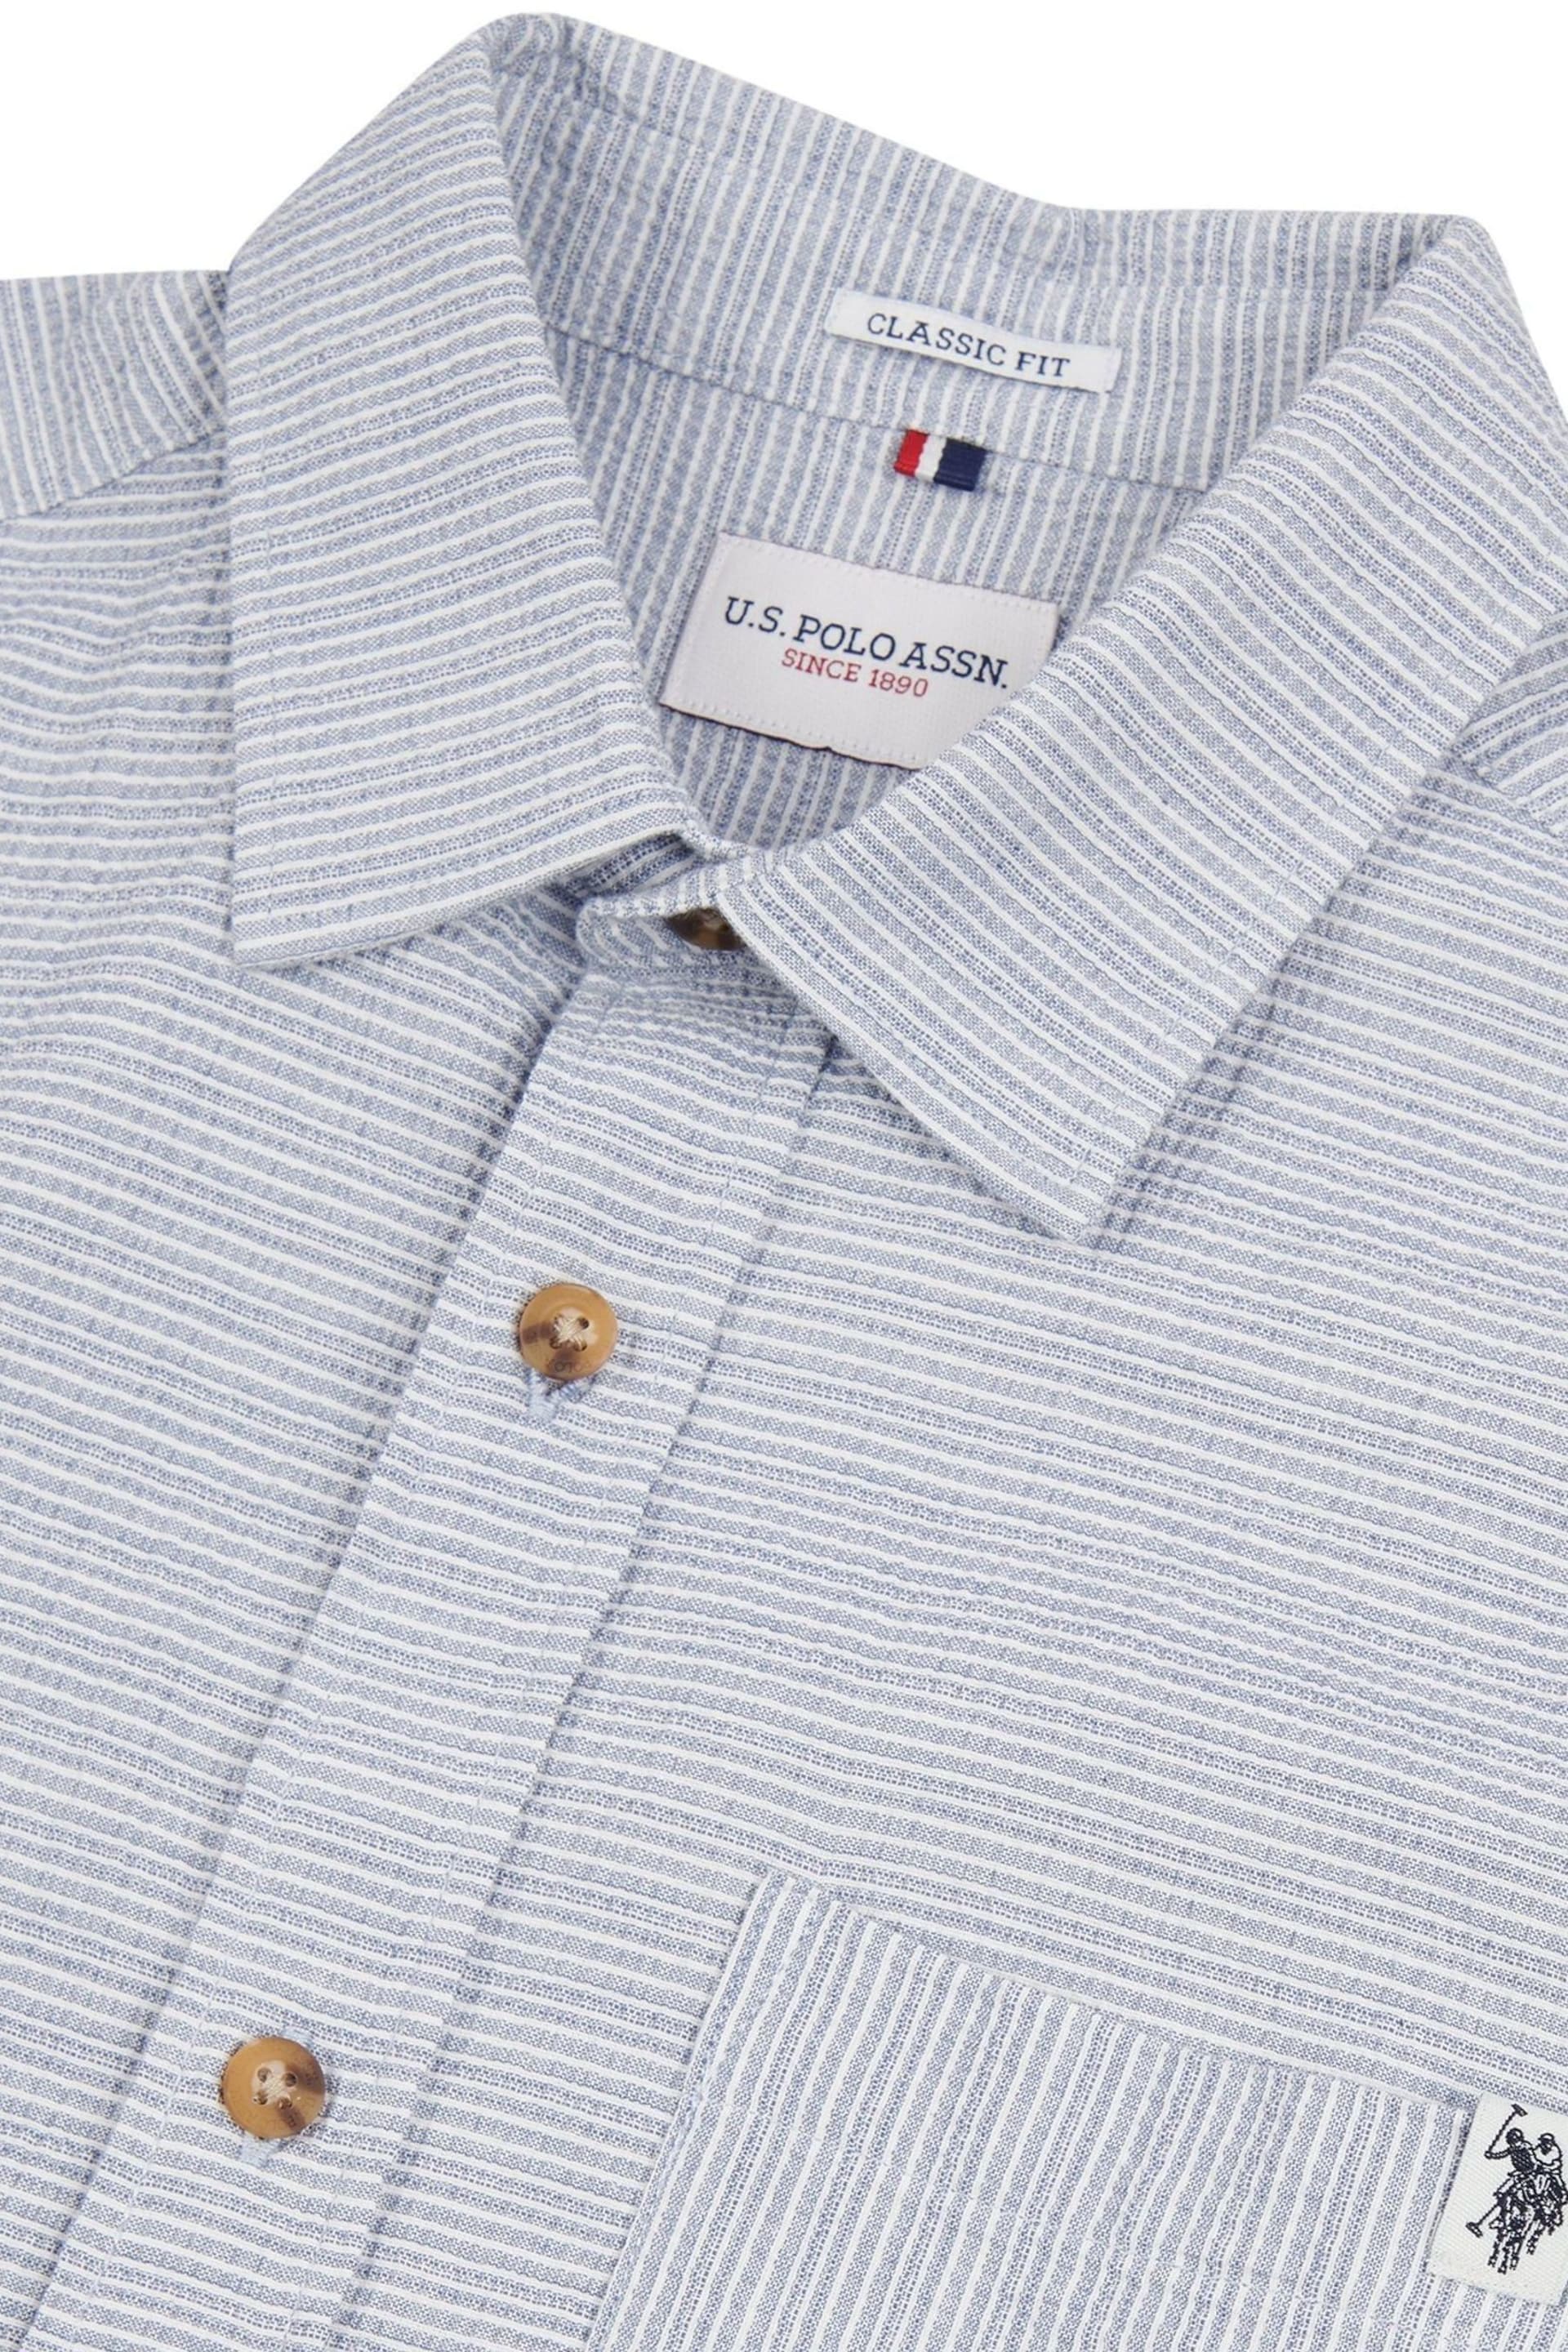 U.S. Polo Assn. Mens Blue Seersucker Stripe Short Sleeve Shirt - Image 7 of 9